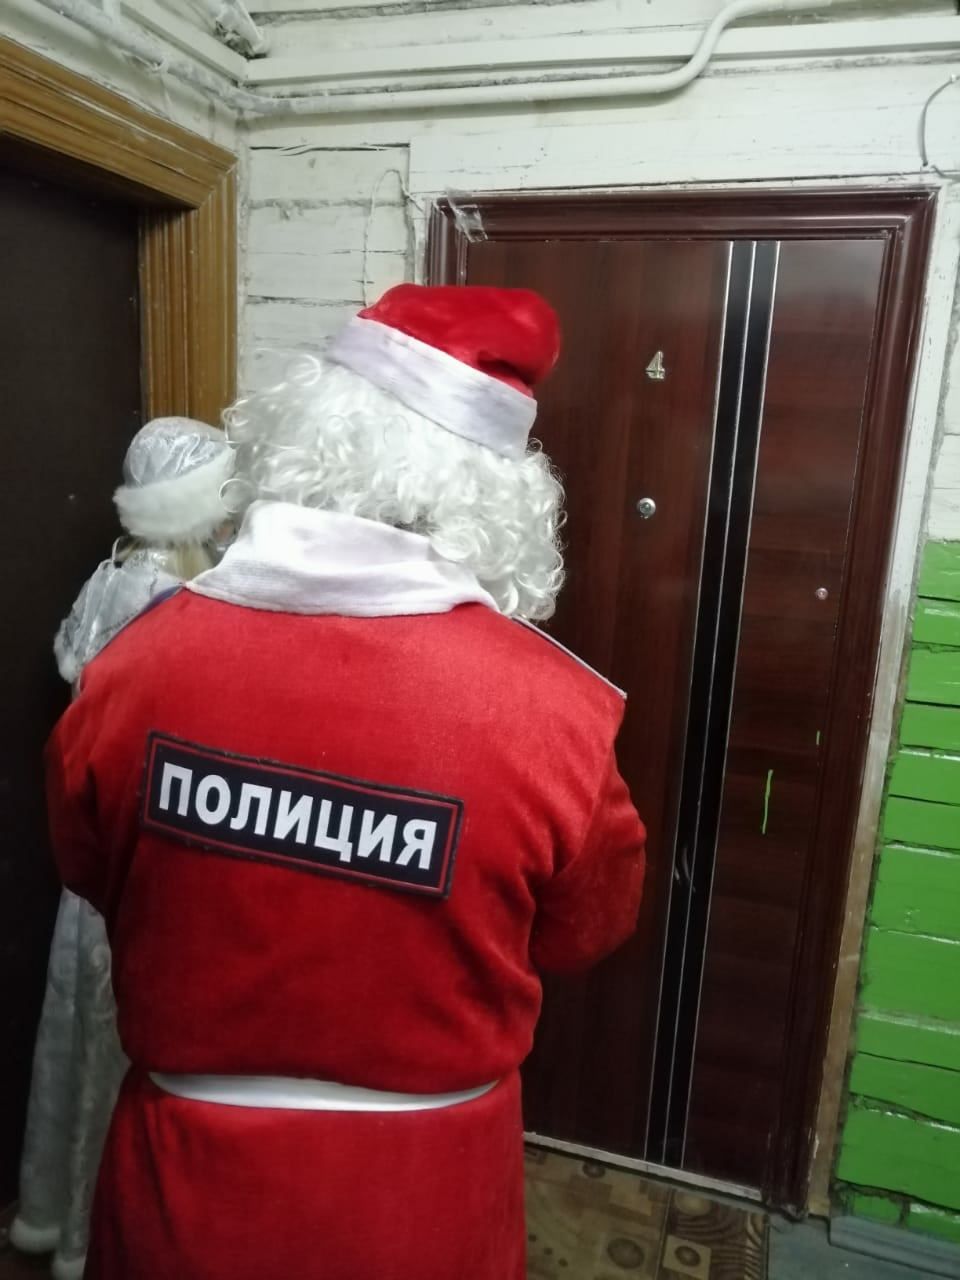 Полицейский Кыш Бабай Васильево гаиләләрендә булды